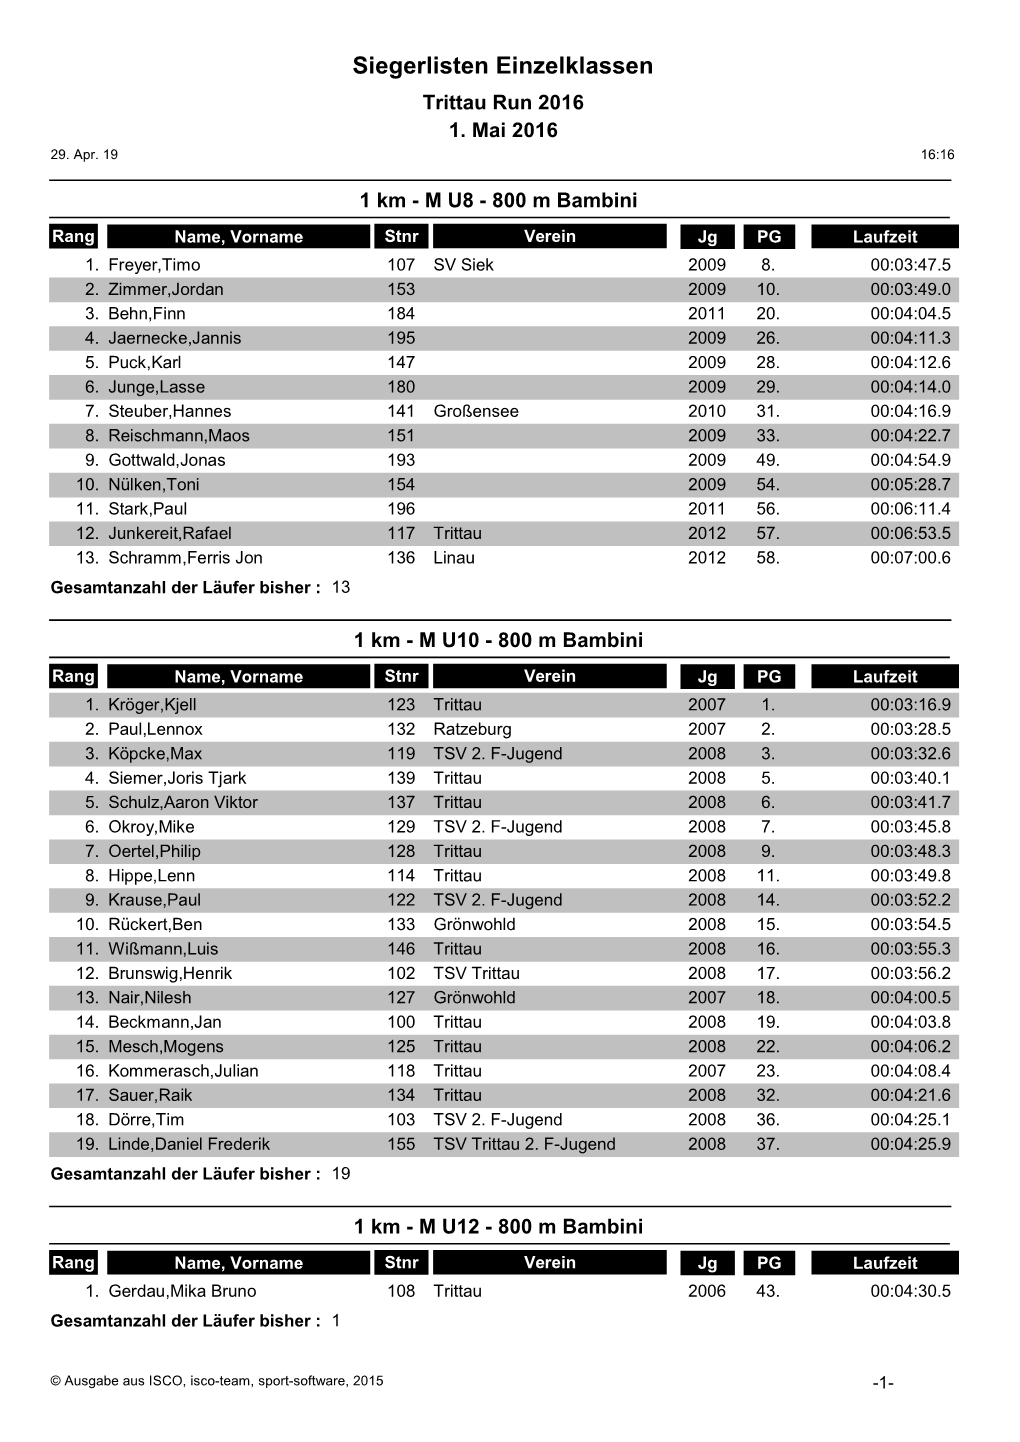 Siegerlisten Einzelklassen Trittau Run 2016 1